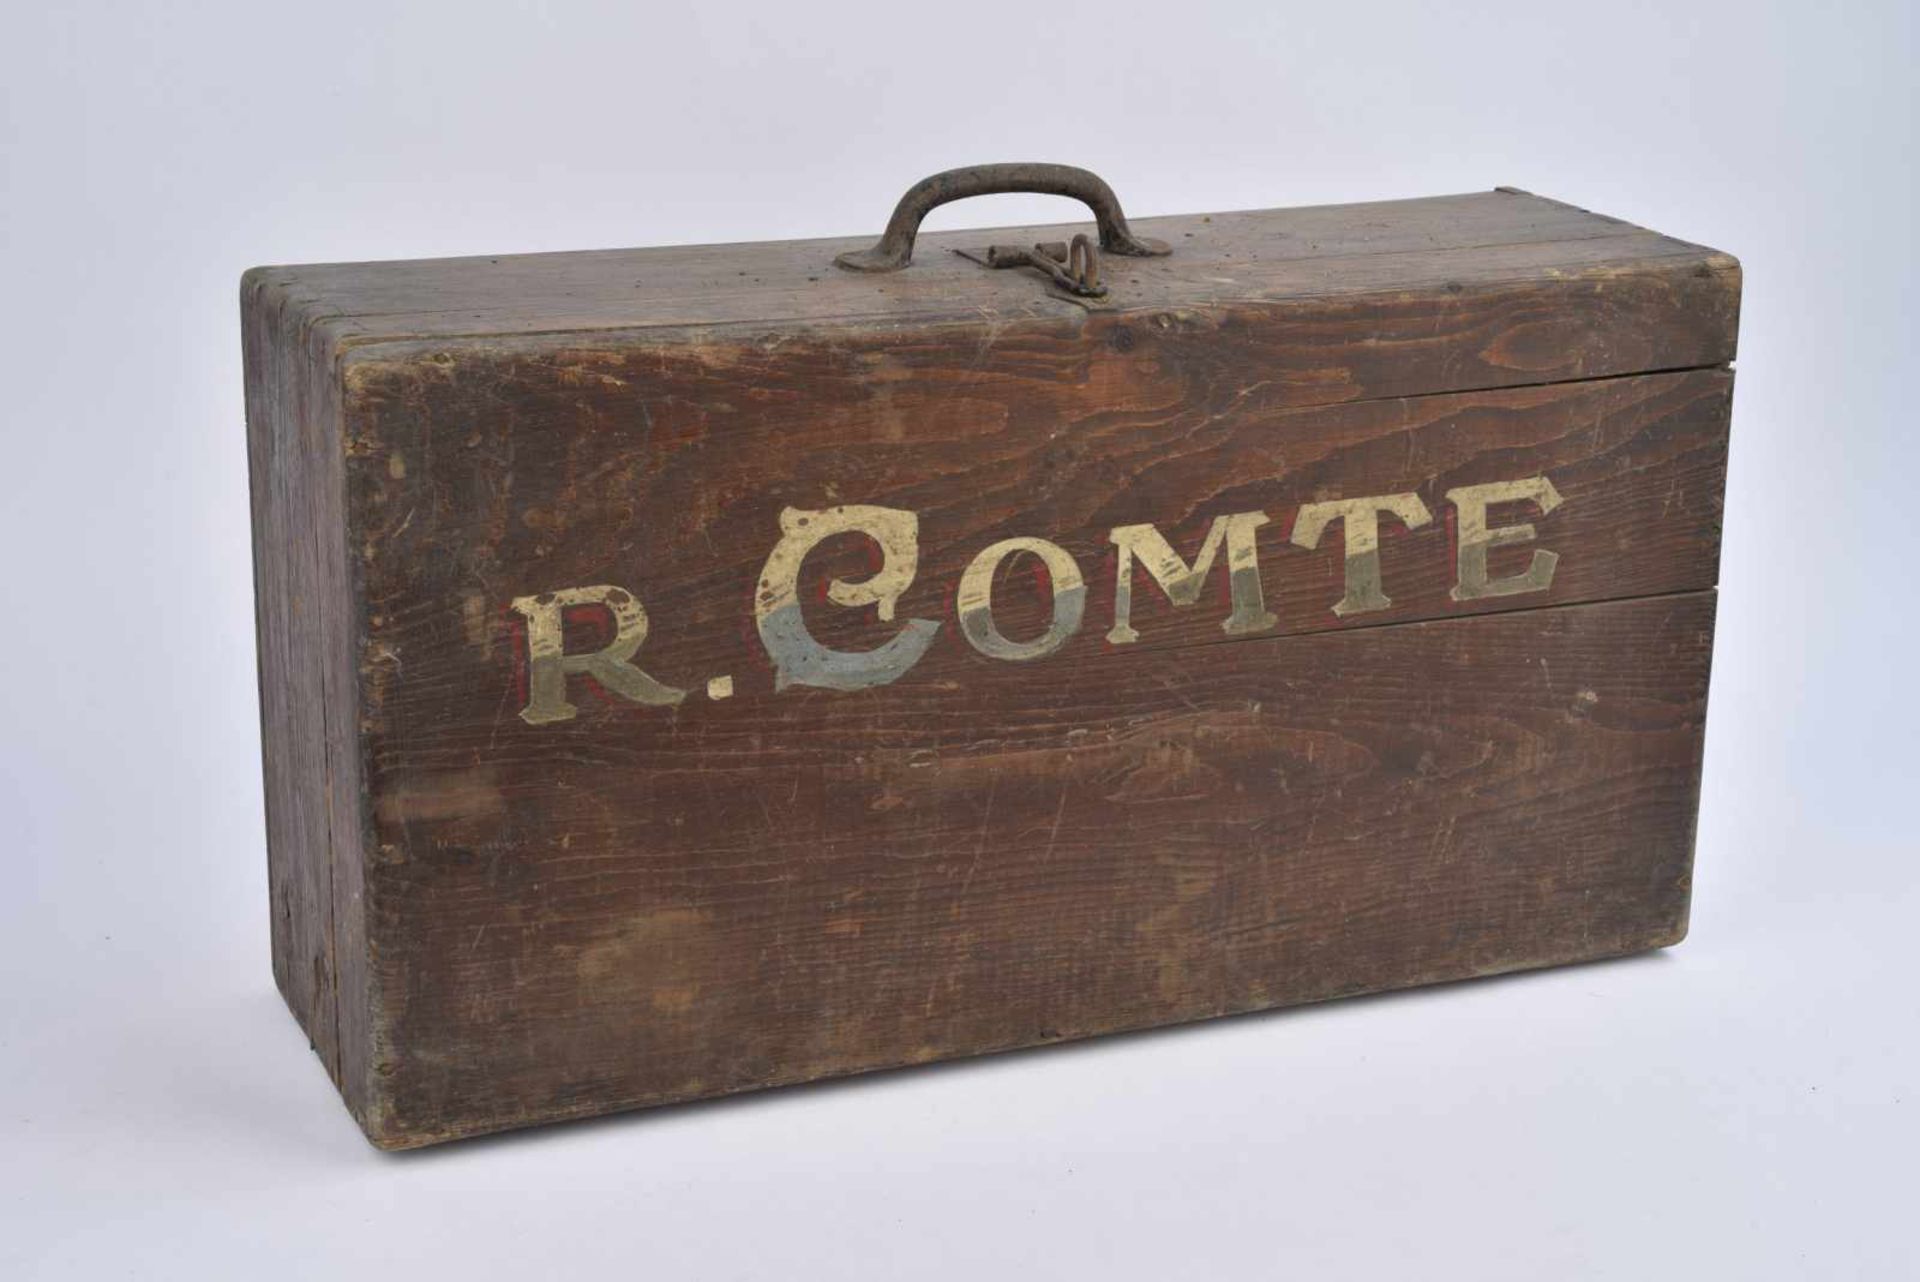 Valise en bois de prisonnier de guerre français nominative peinte : « R. Comte ». Etat II